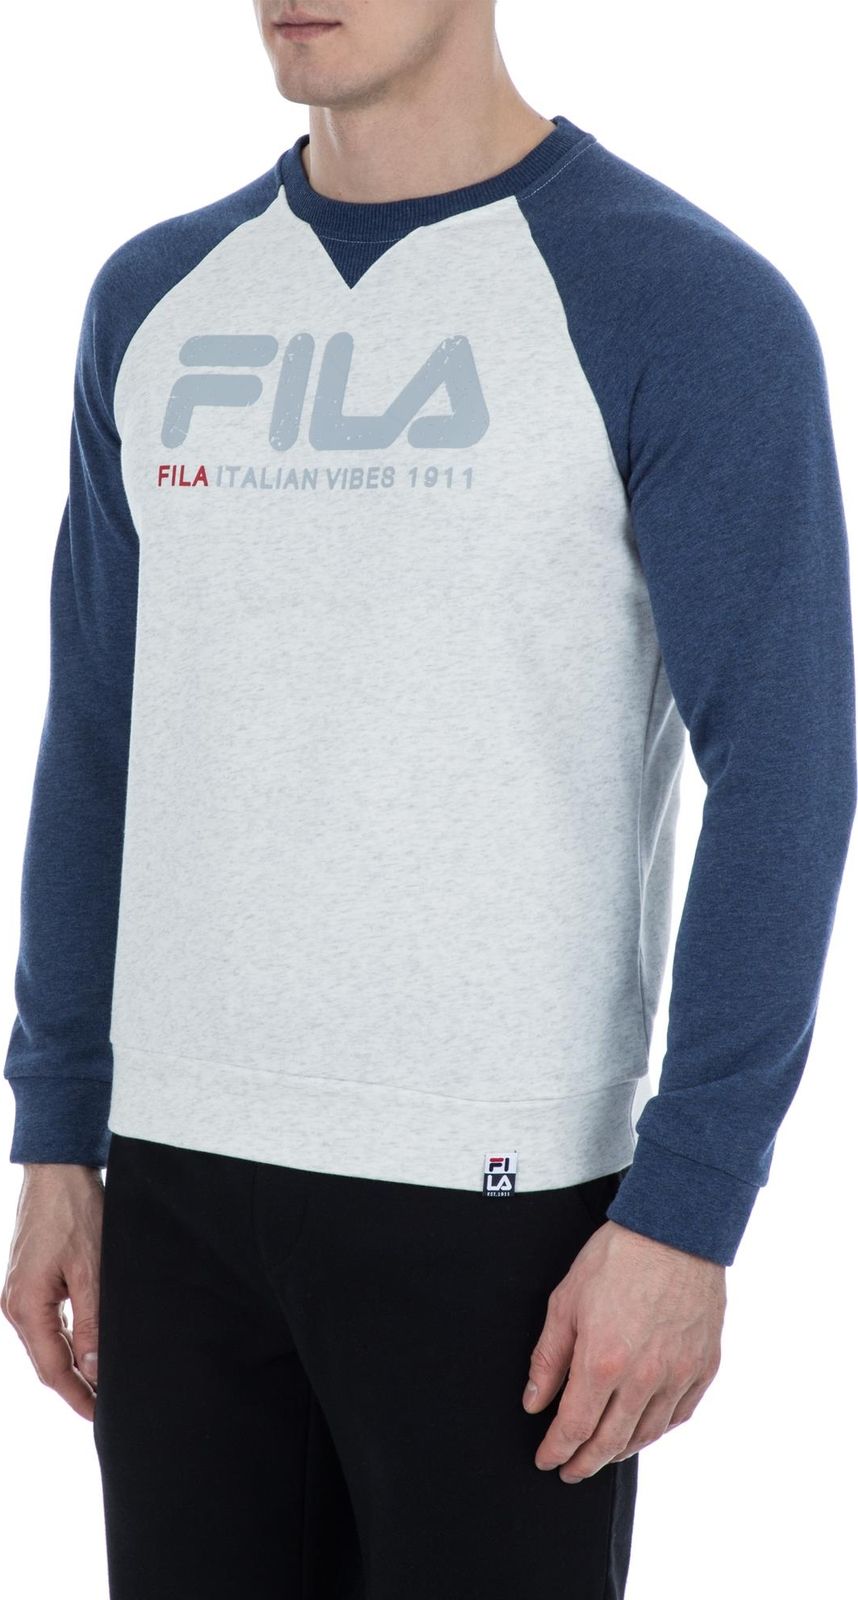   Fila Men's jumper, : -. S19AFLJUM03-1A.  S (46)